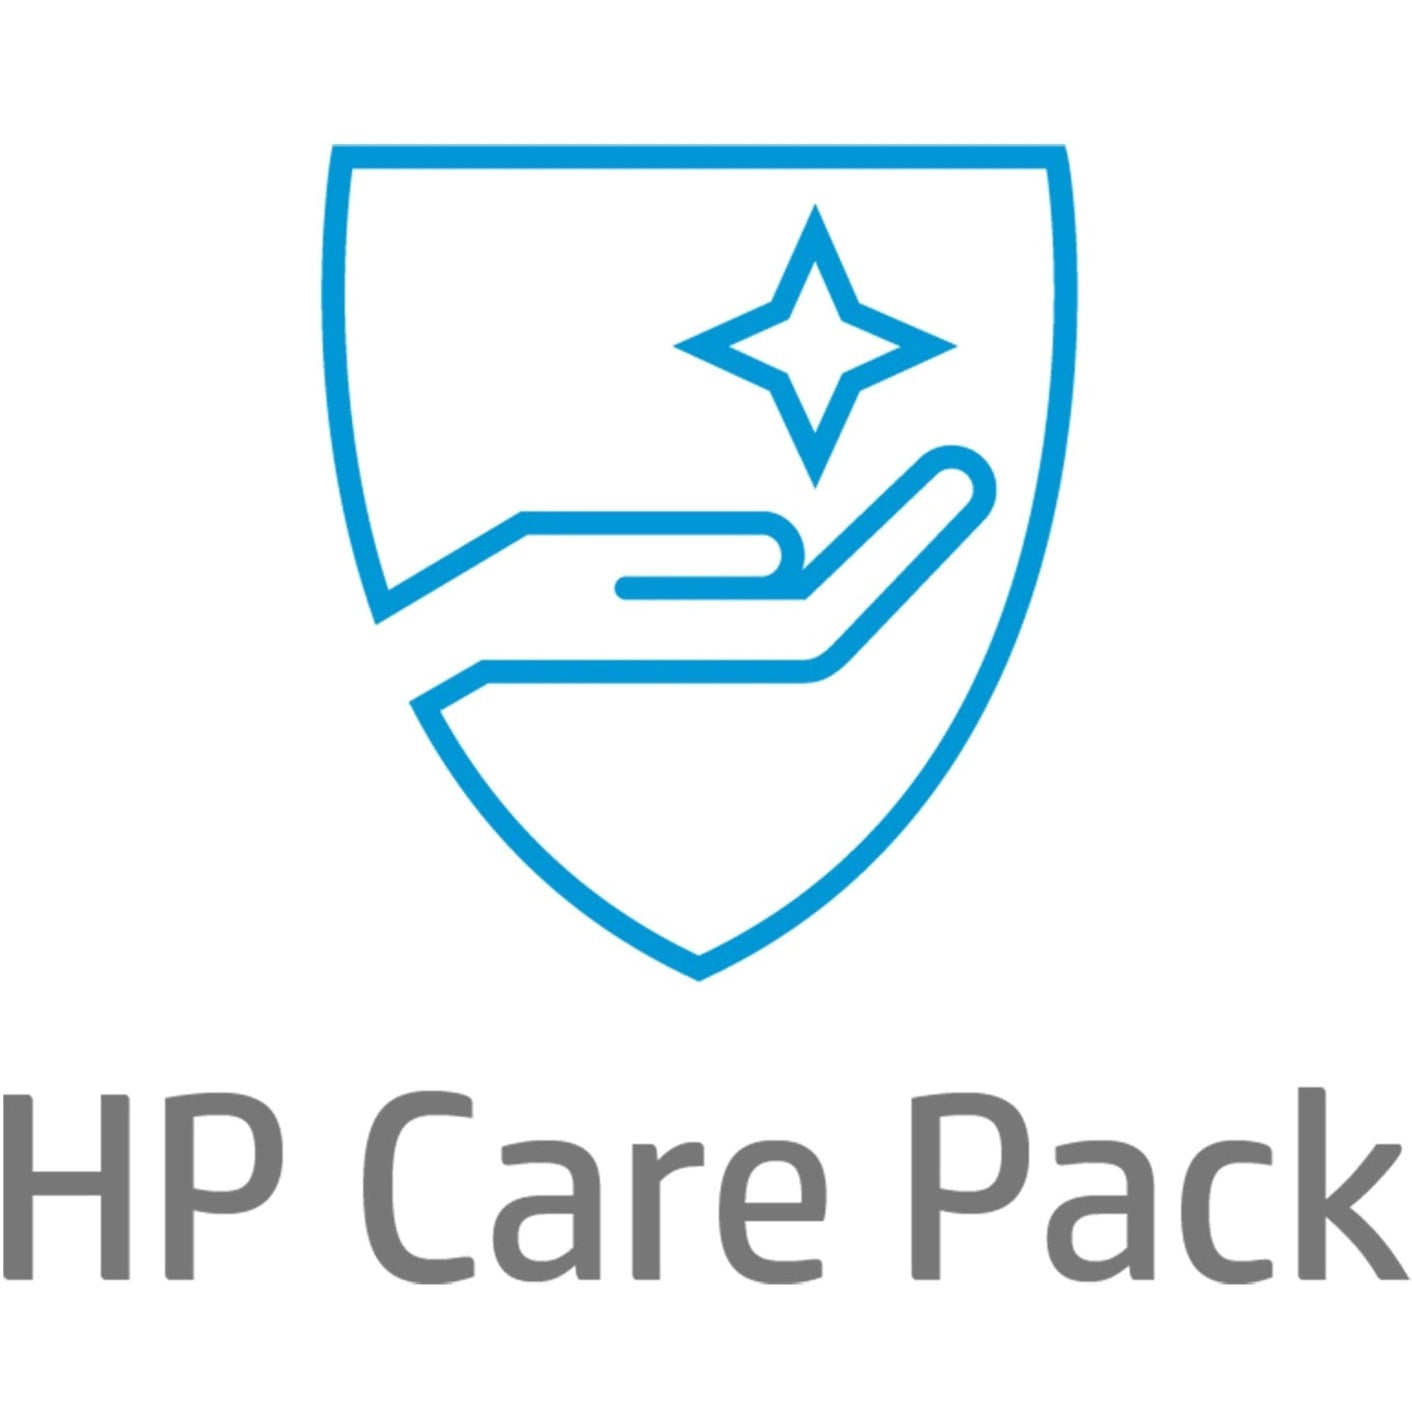 HP Care Pack - 5 Year - Service (UJ338E)